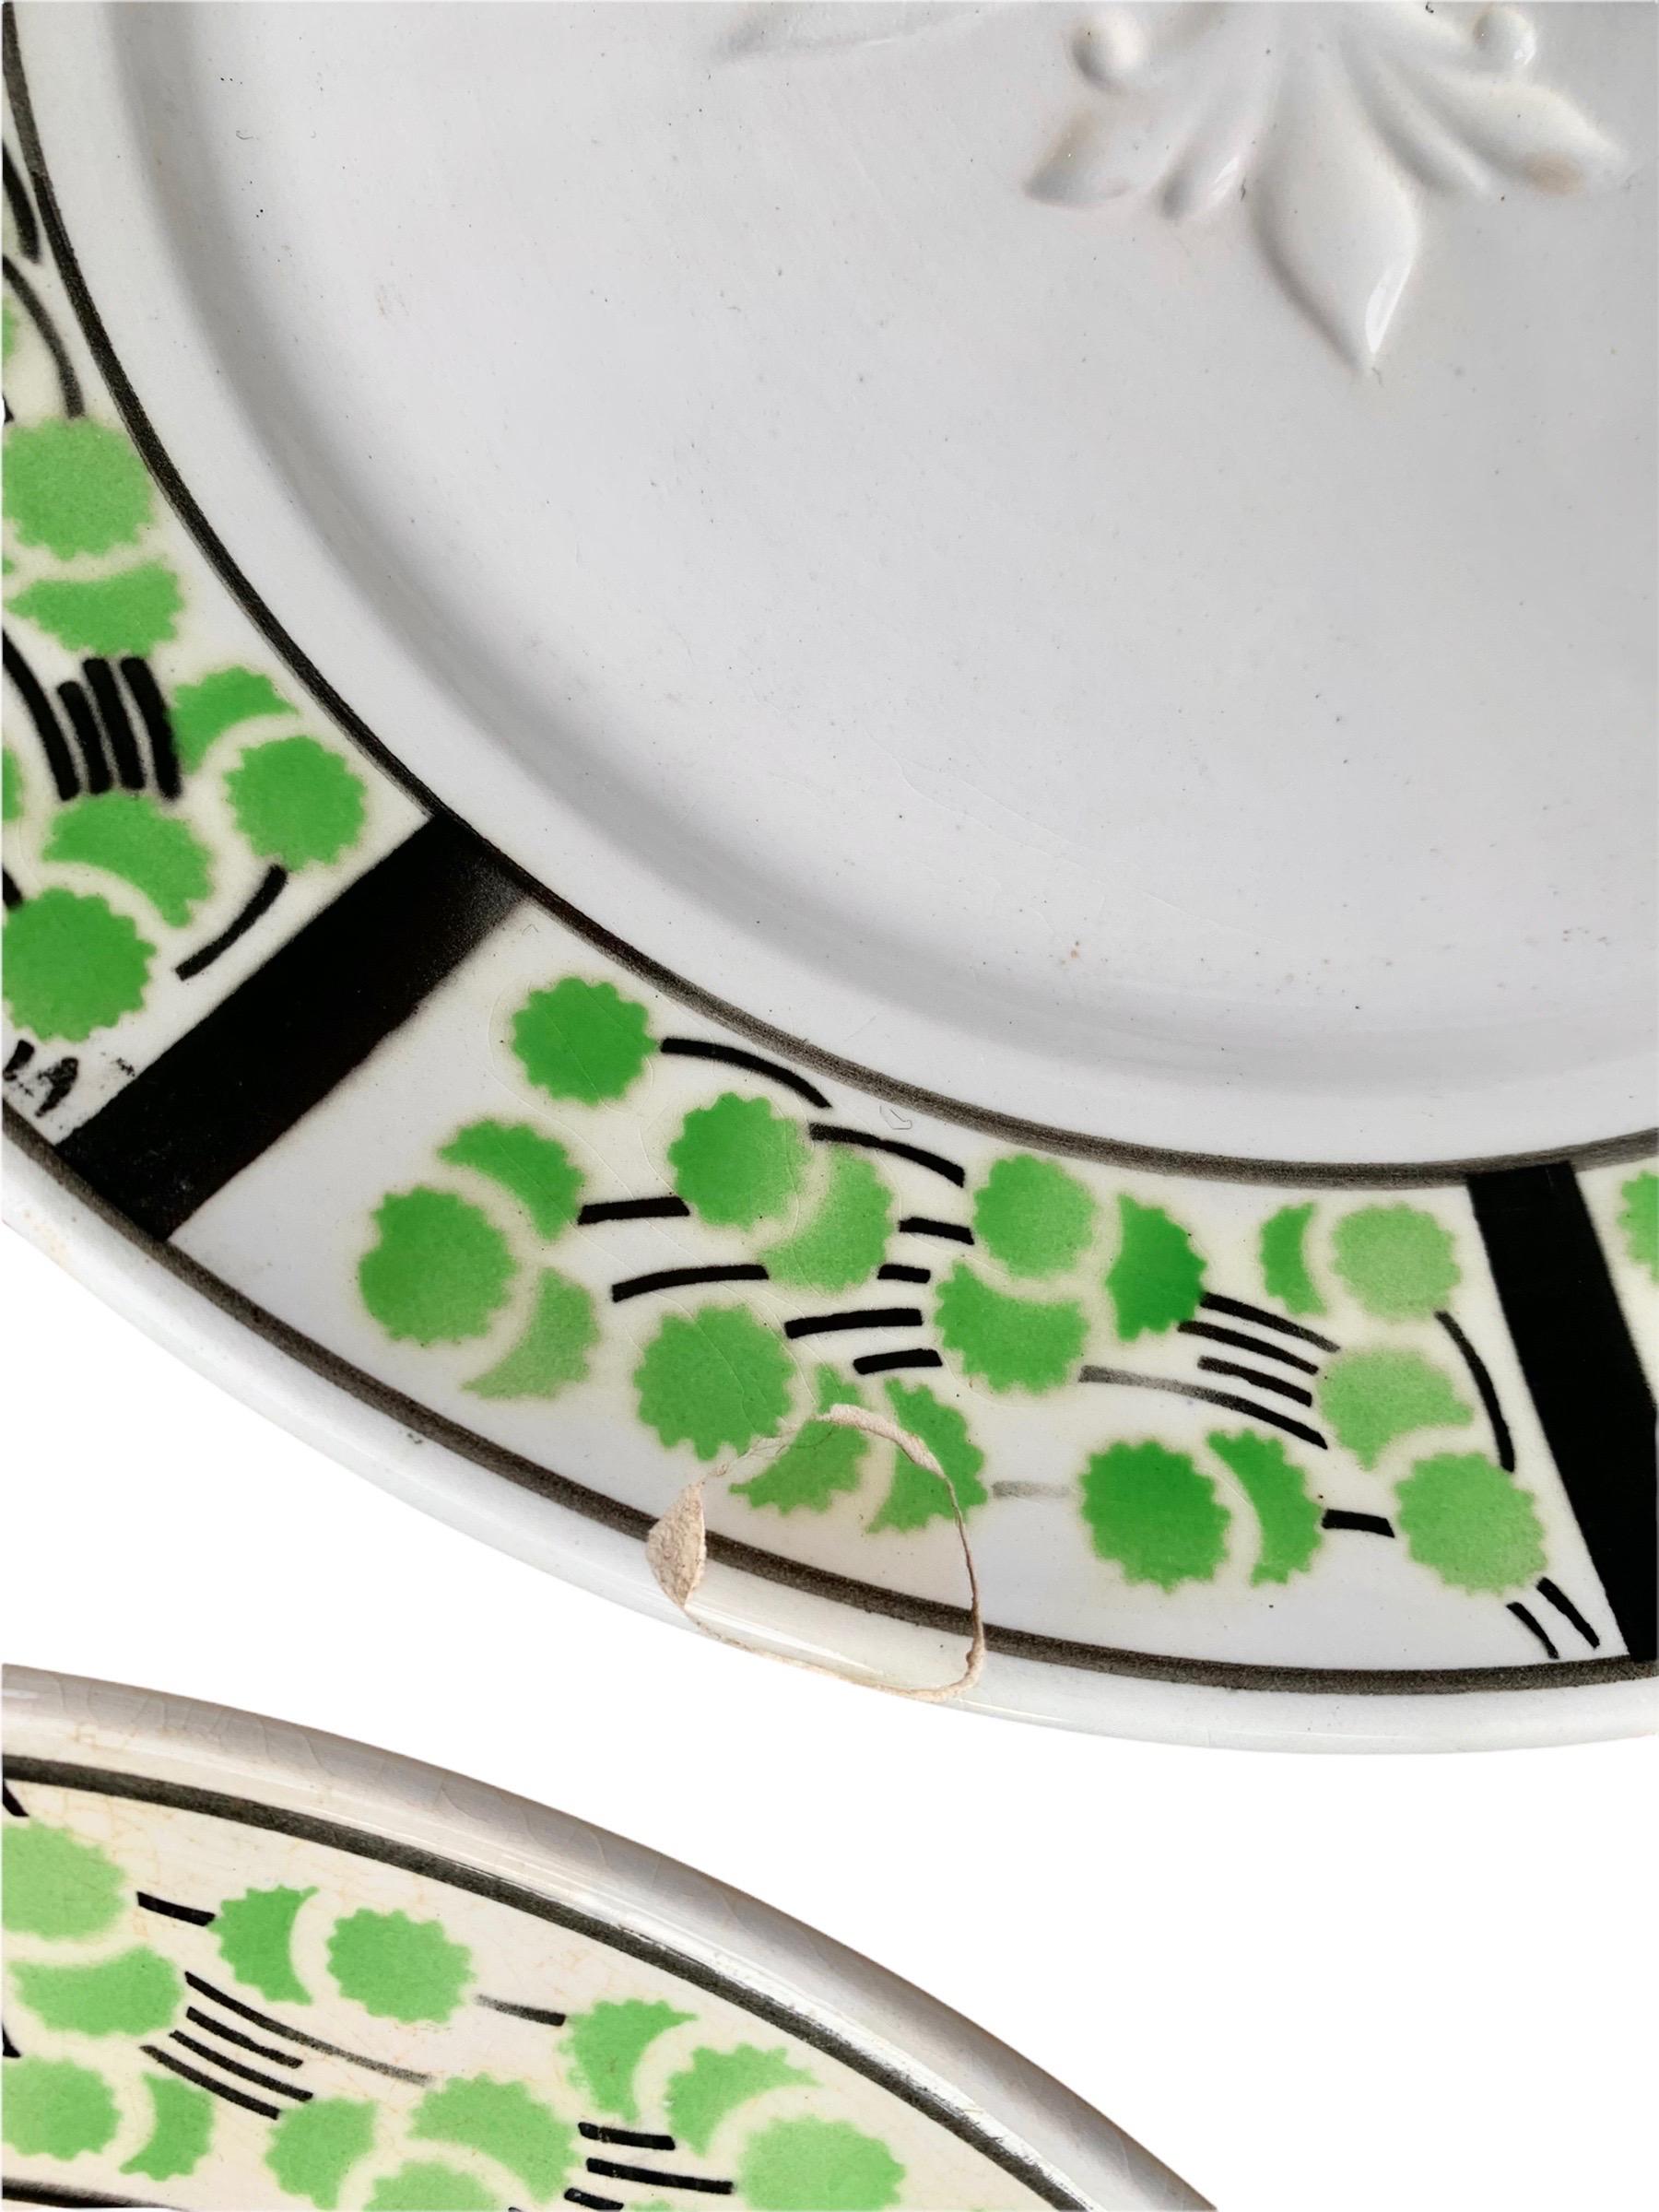 Ein schöner und seltener Satz antiker französischer Art Deco Fayence-Spargelservierstücke, bestehend aus zehn Tellern und einer Servierplatte, von der angesehenen französischen Fayencerie, Digoin & Sarreguemines. Die Teller haben eine Vertiefung für